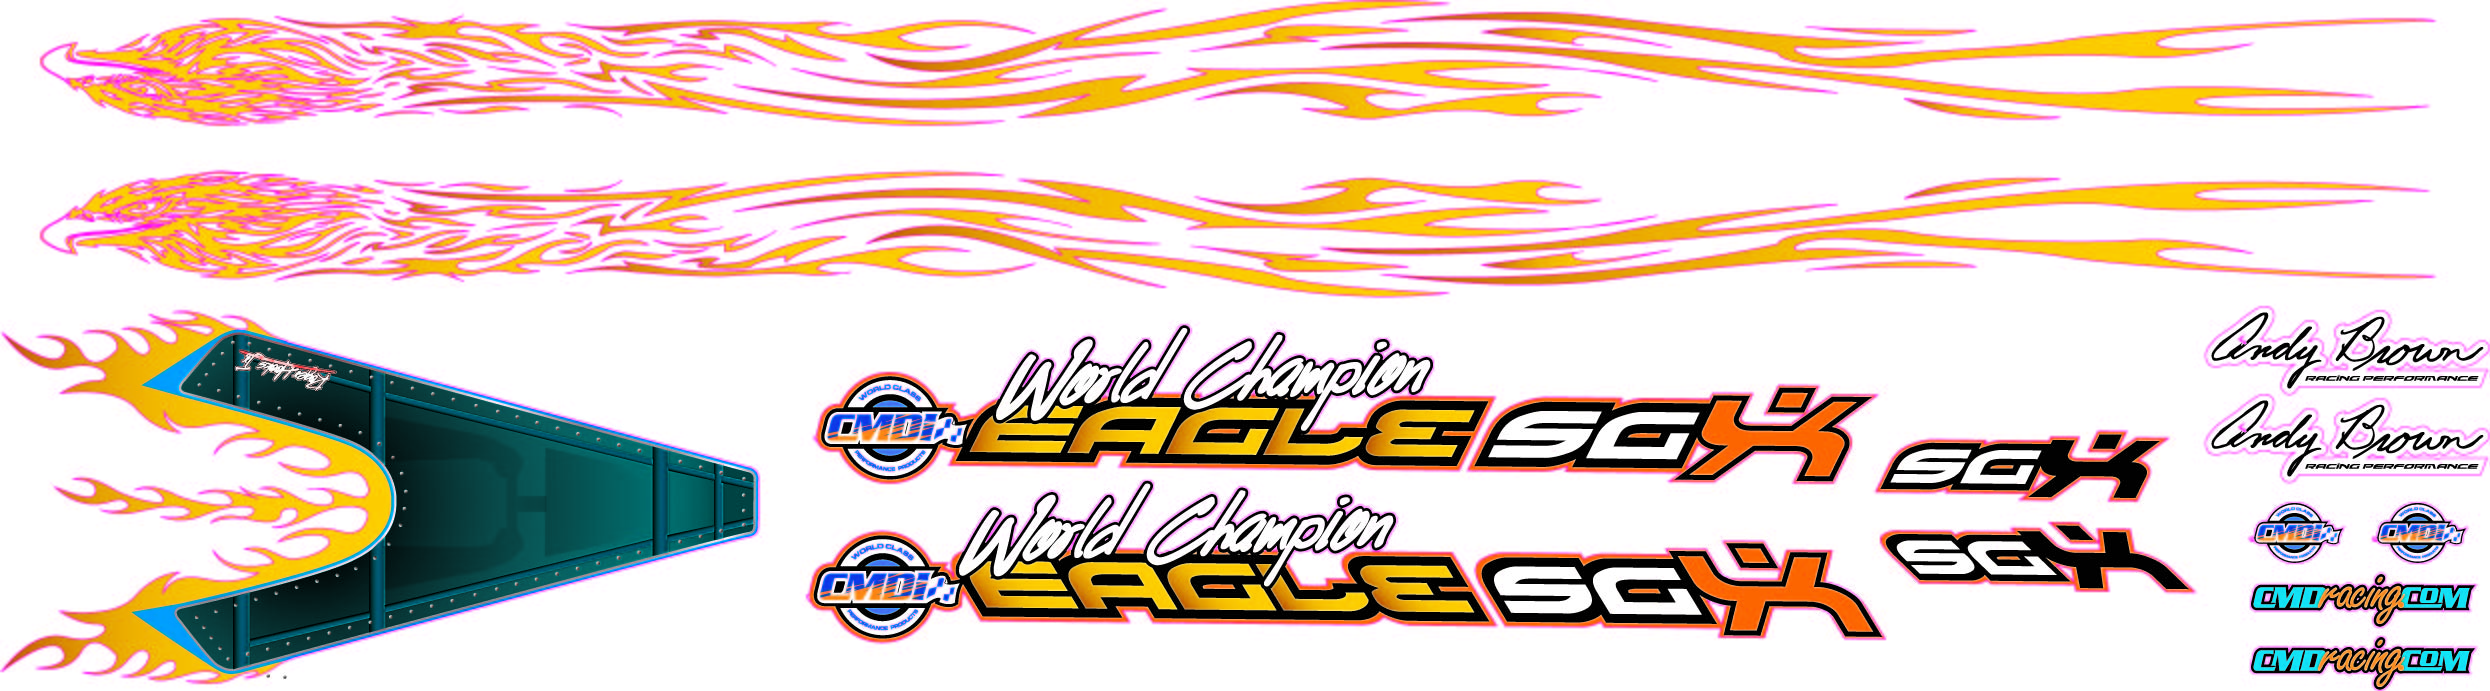 Eagle SG Series Fire Eagle Decal Set